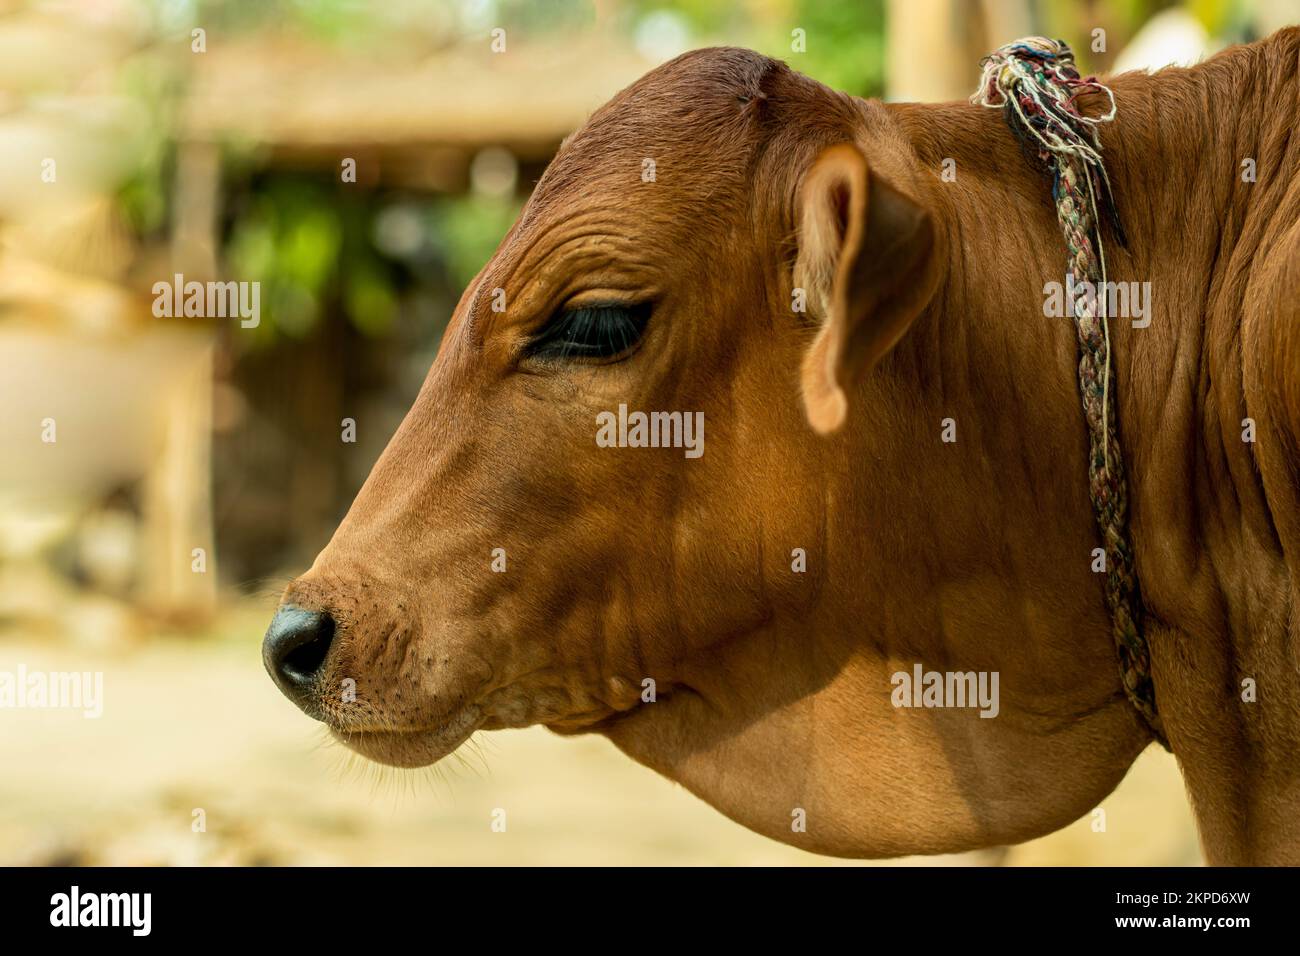 Une vache de couleur dorée est un grand animal femelle qui est gardé dans les fermes pour son lait. Les gens se réfèrent parfois aux animaux mâles et femelles de cette espèce comme c Banque D'Images